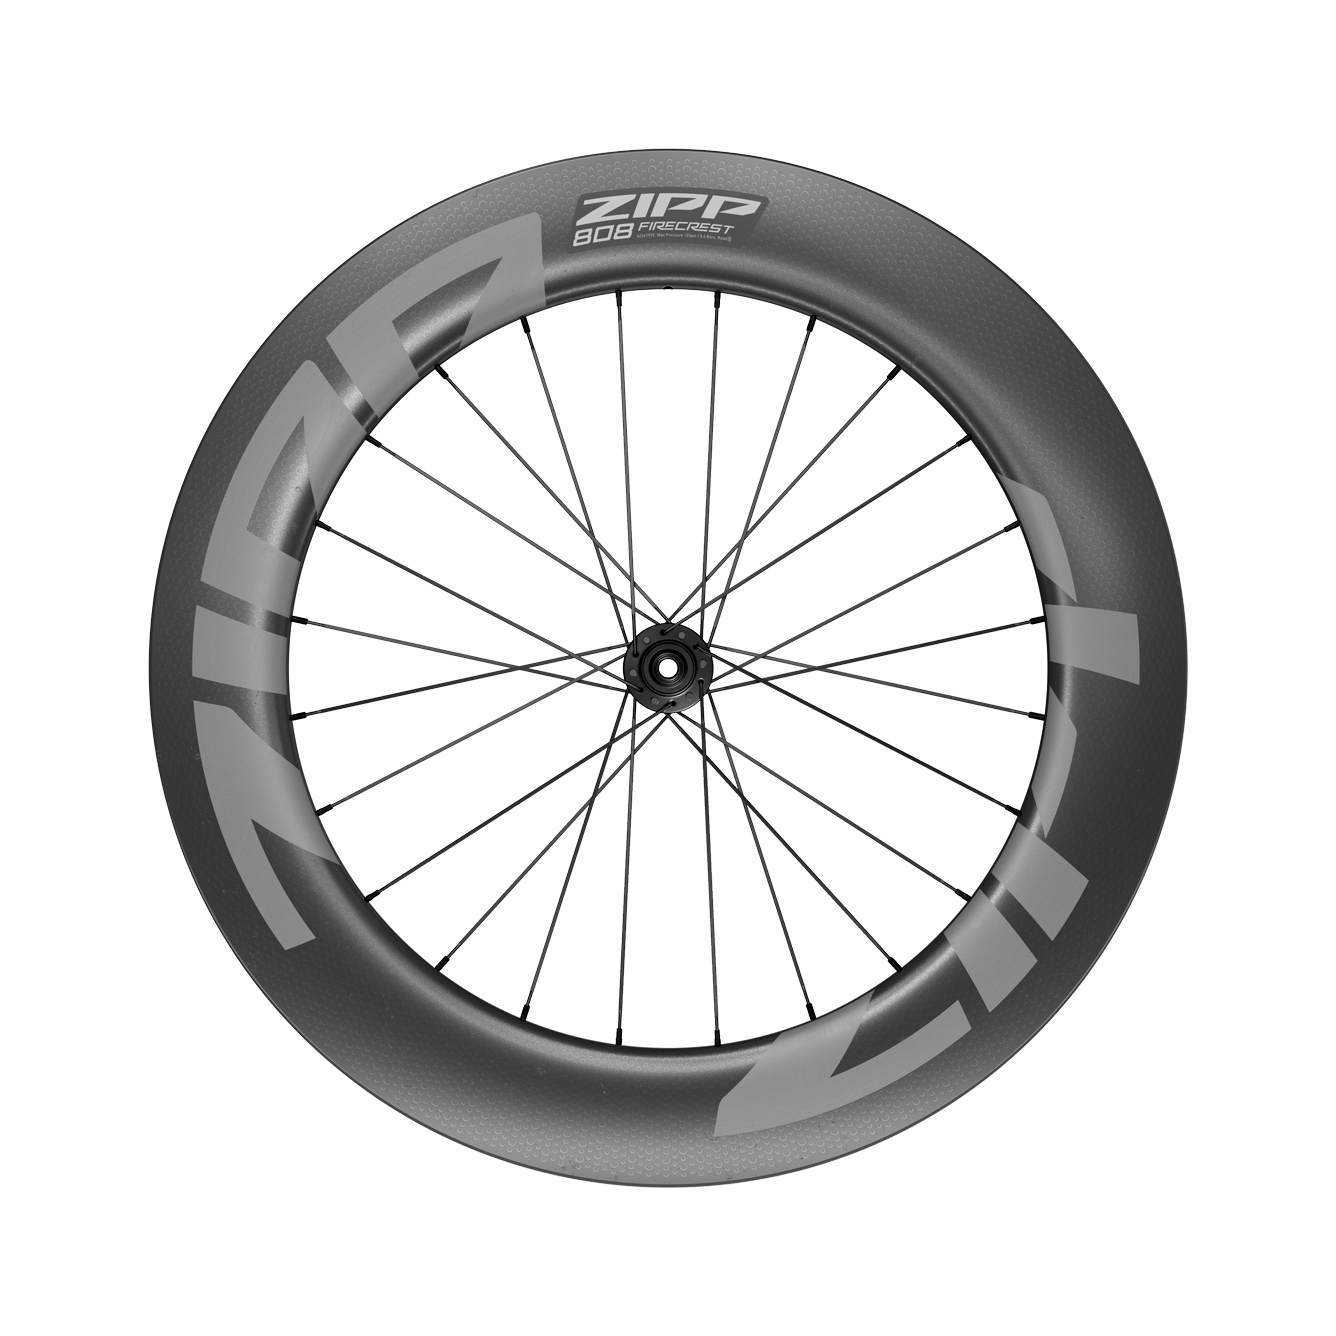 zipp carbon wheels